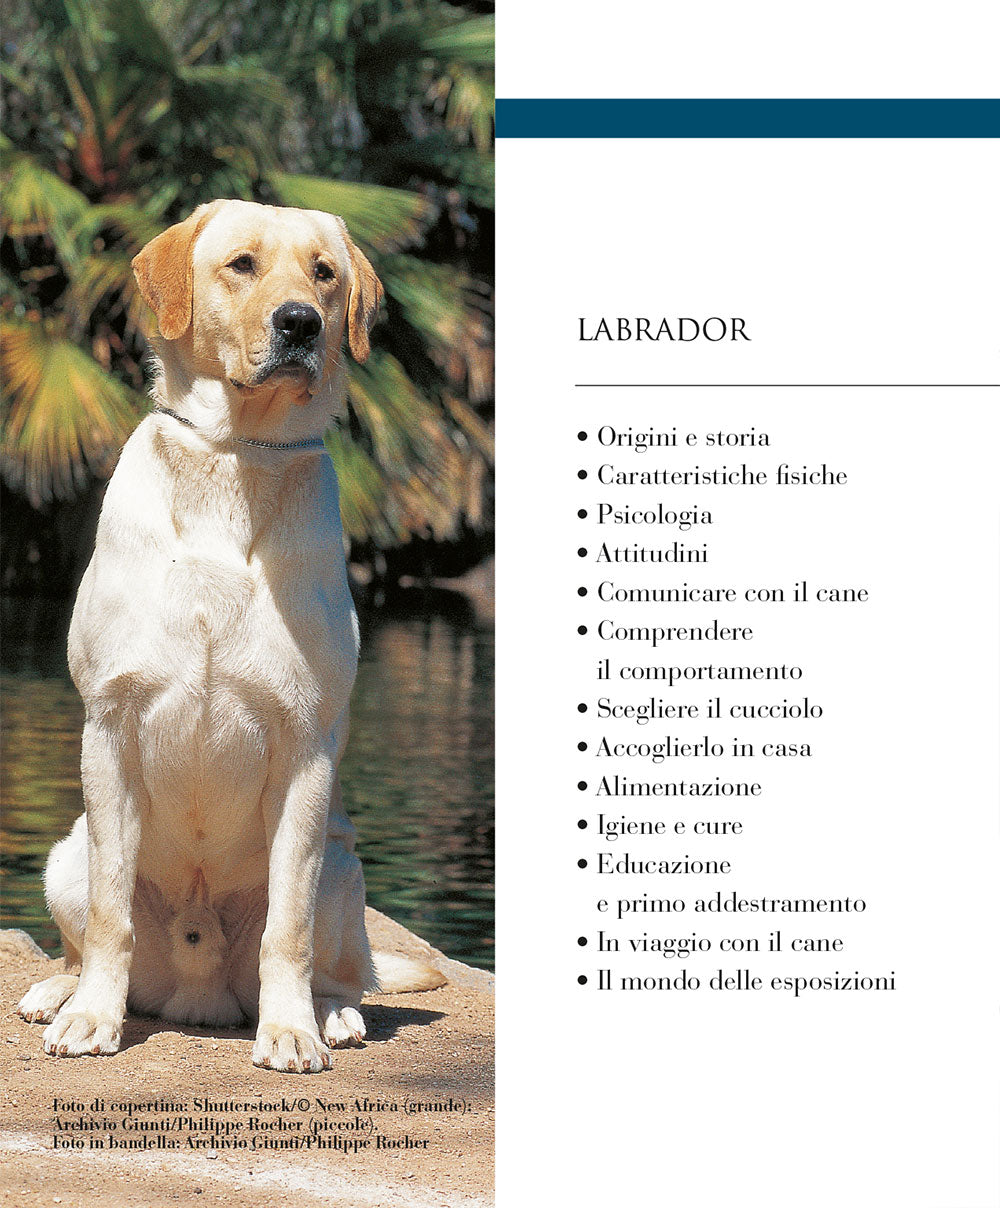 Labrador::vita in casa educazione cure